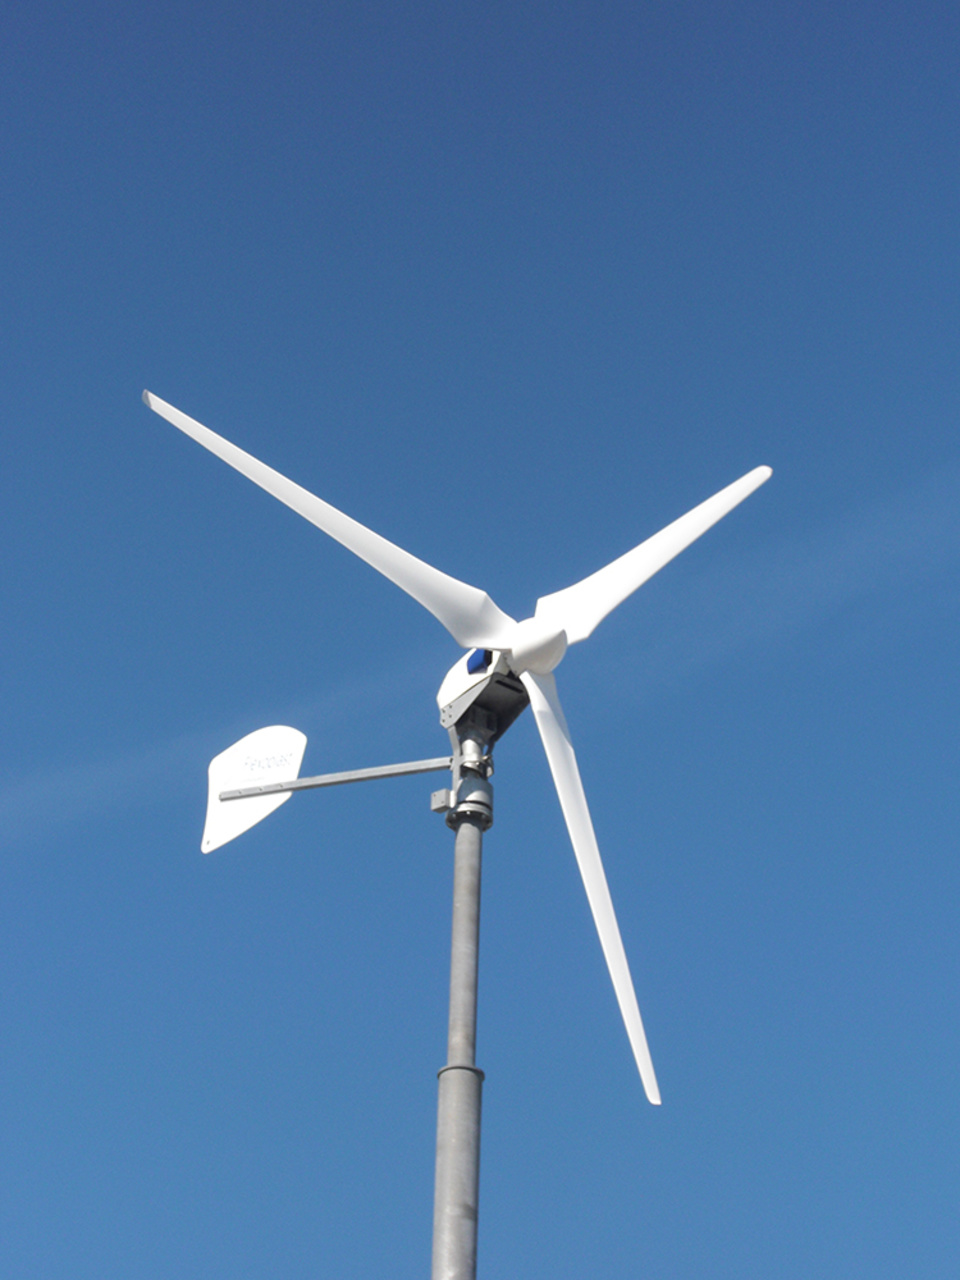 Windkraft2 bei Steuer- und Regeltechnik GmbH Wettin in Wettin-Löbejün/ OT Wettin